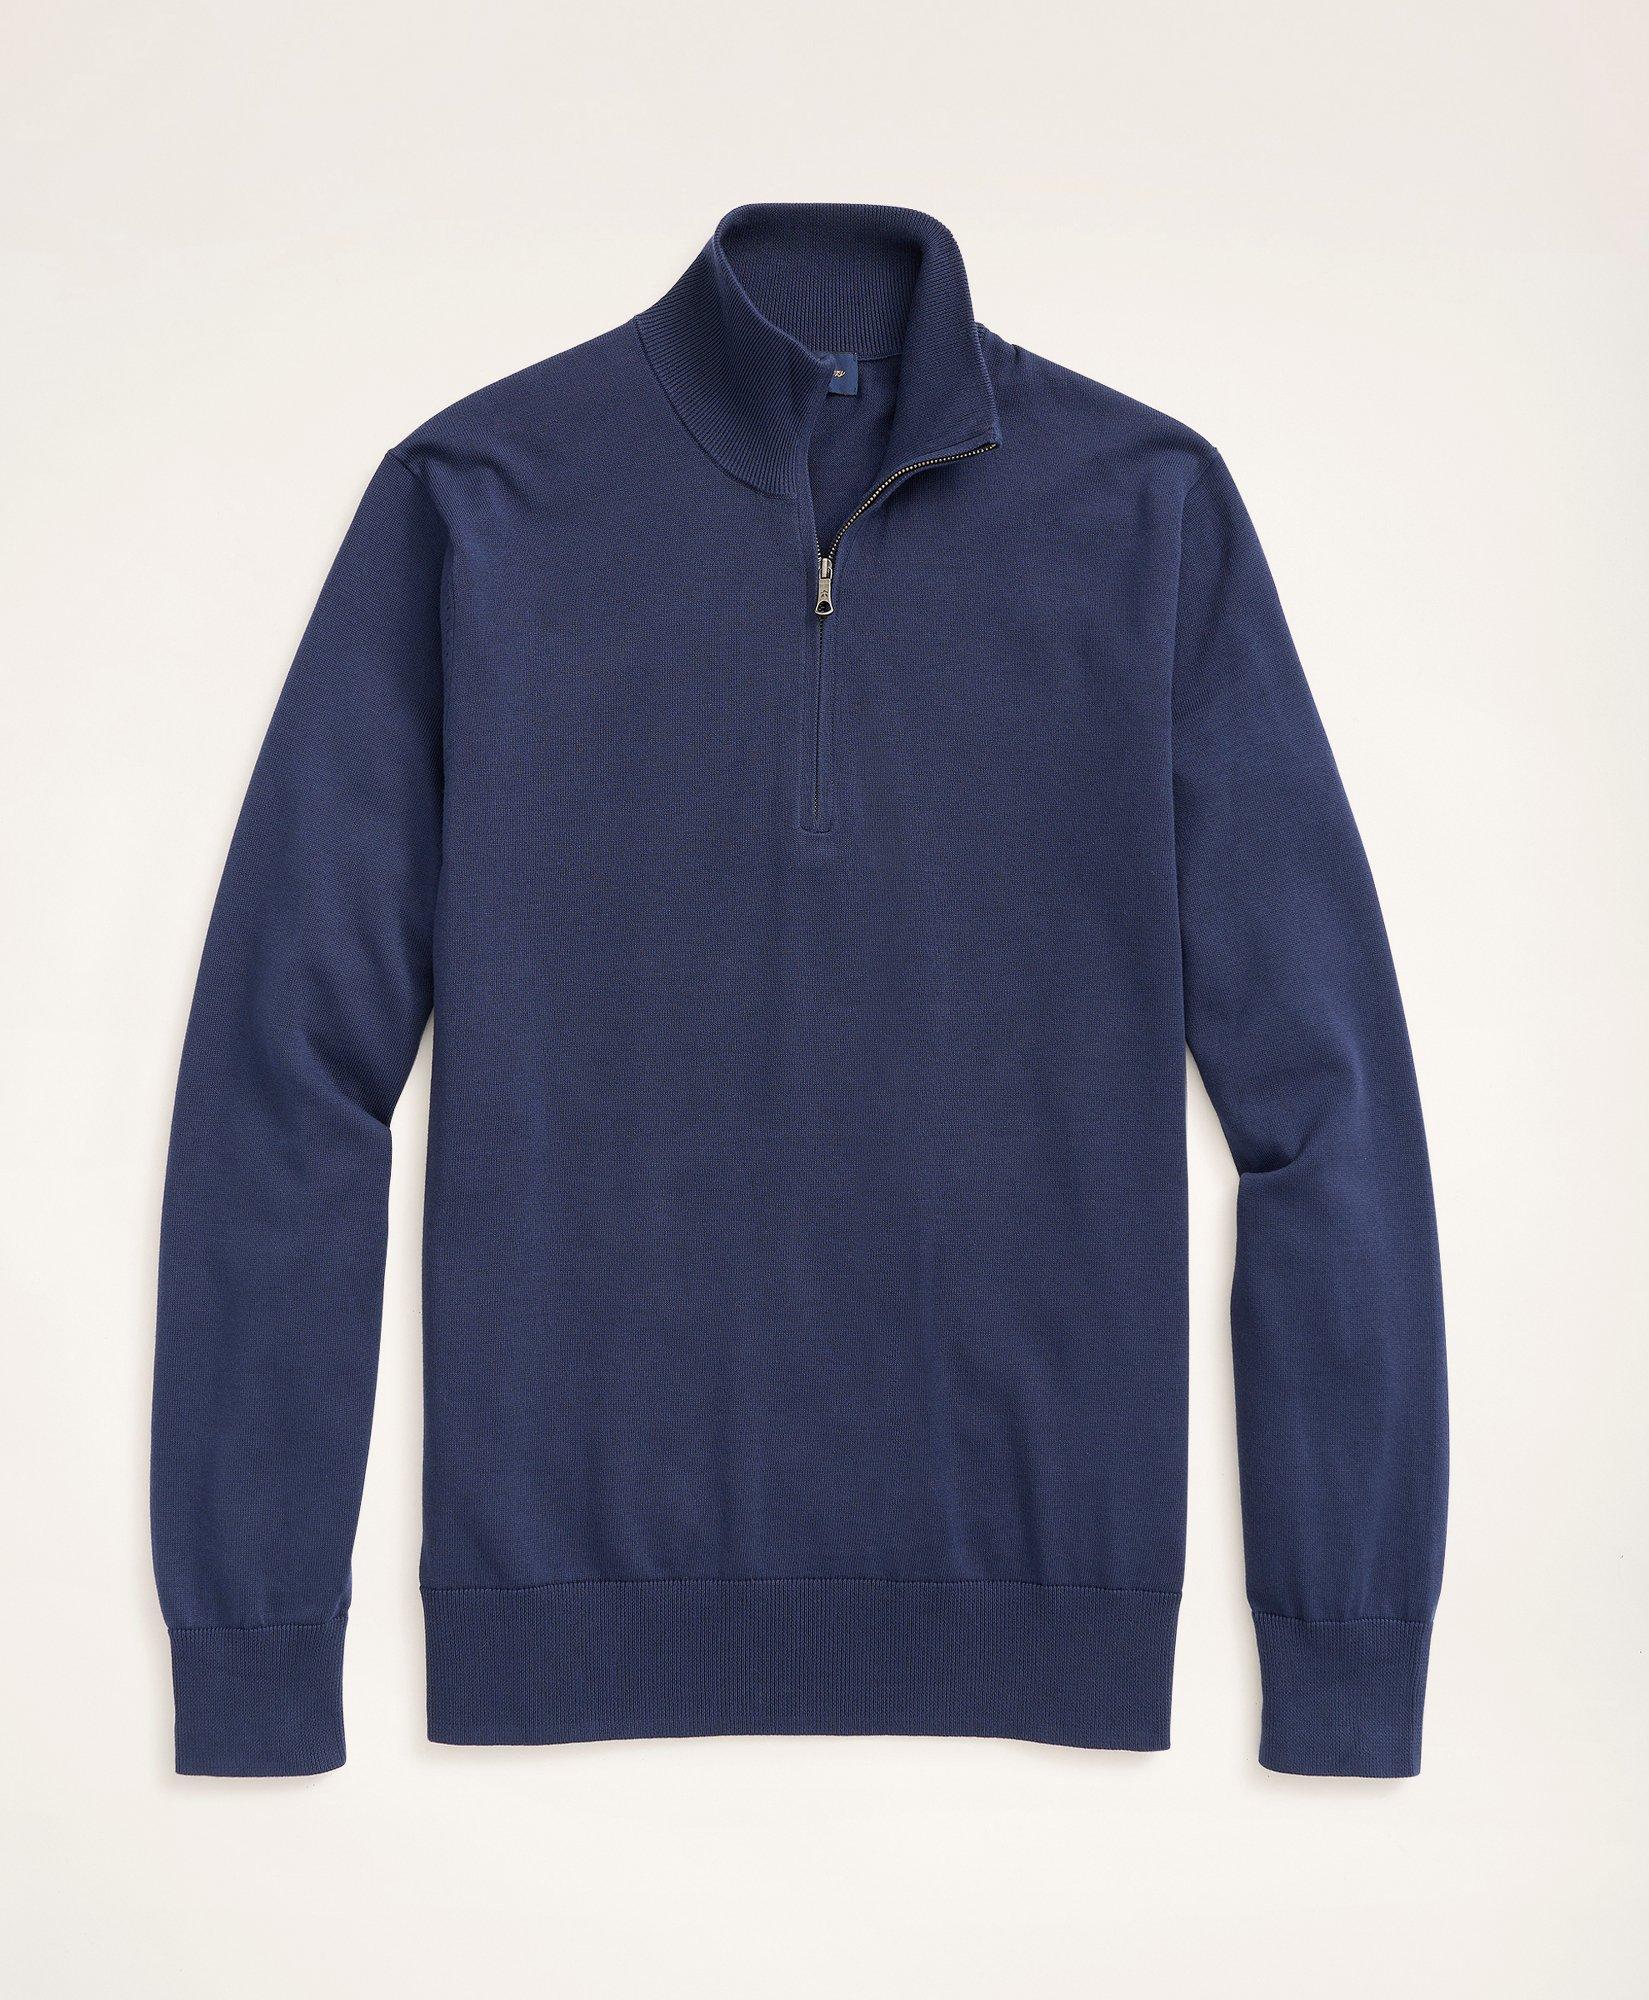 Men's Cotton Half-Zip Sweater